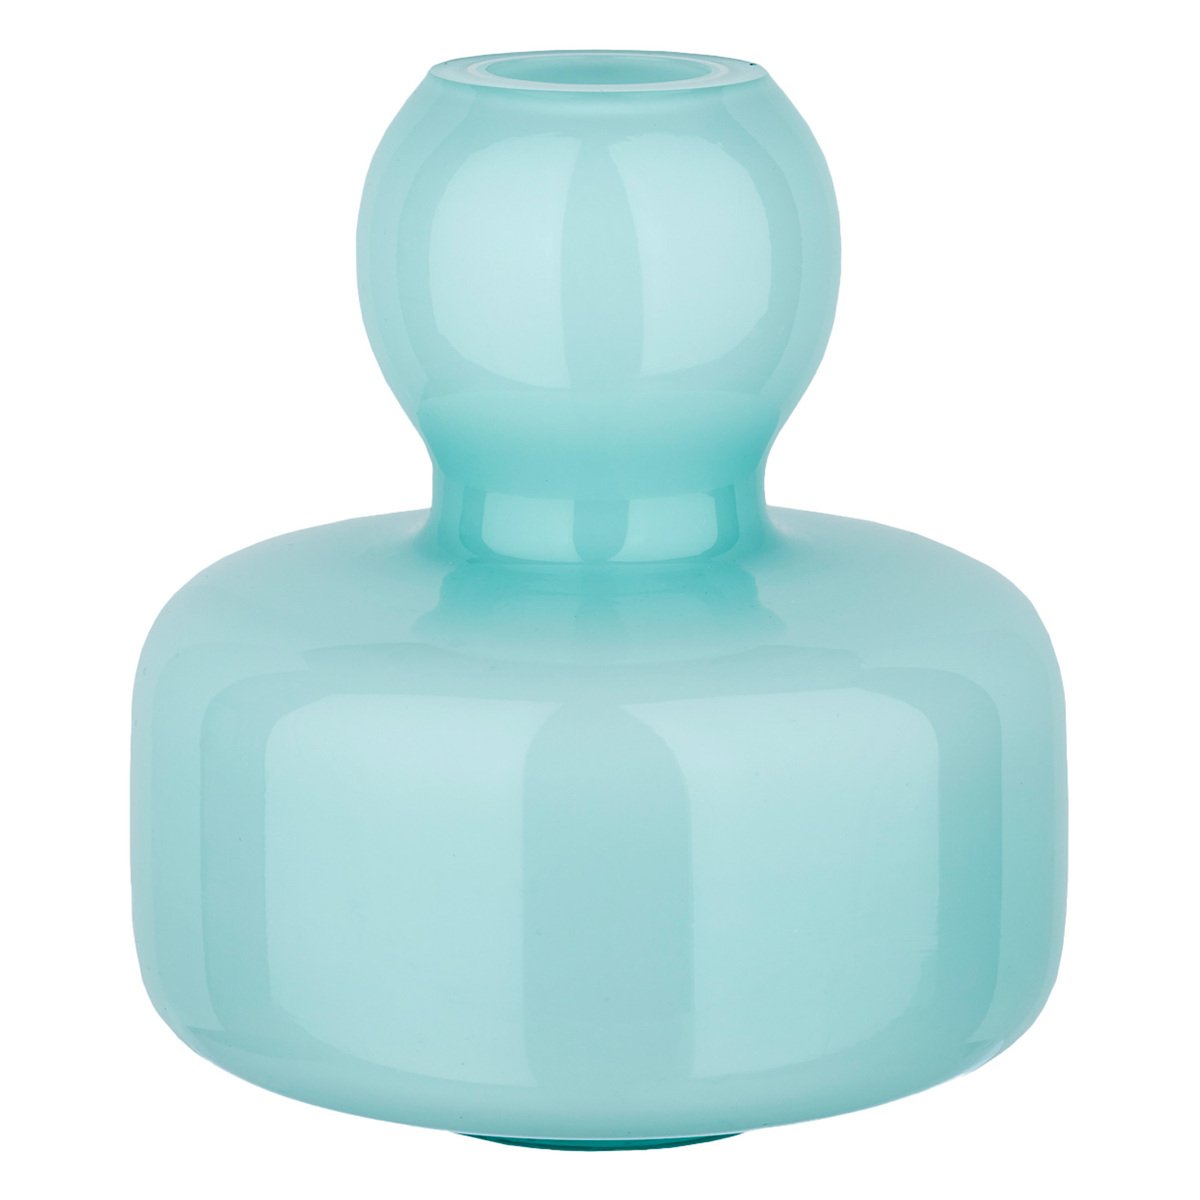 Marimekko Flower vase, mint green | Pre-used design | Franckly